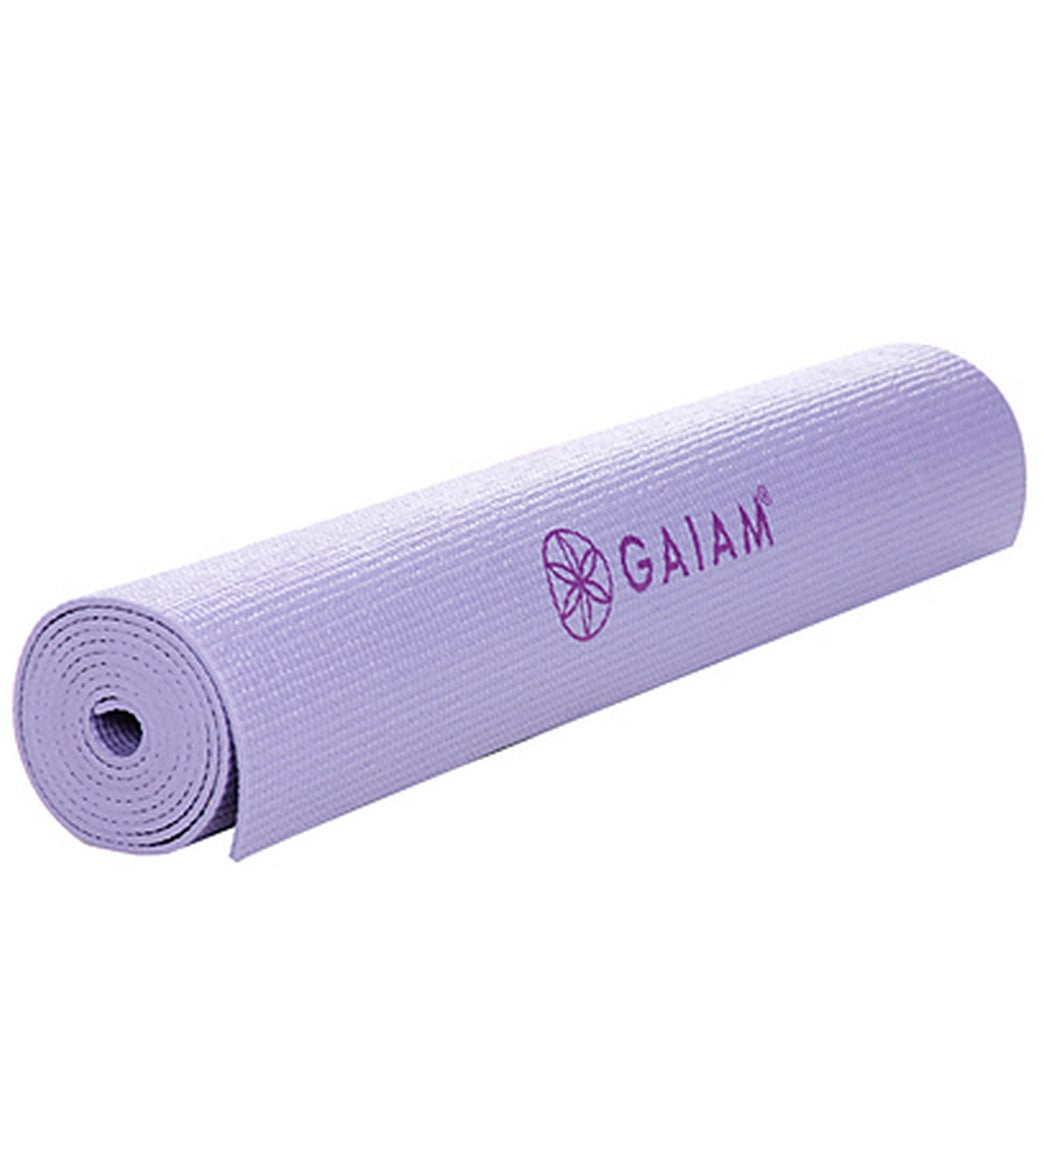 Yoga Accessories - Yoga Equipment, Props, Straps - Gaiam